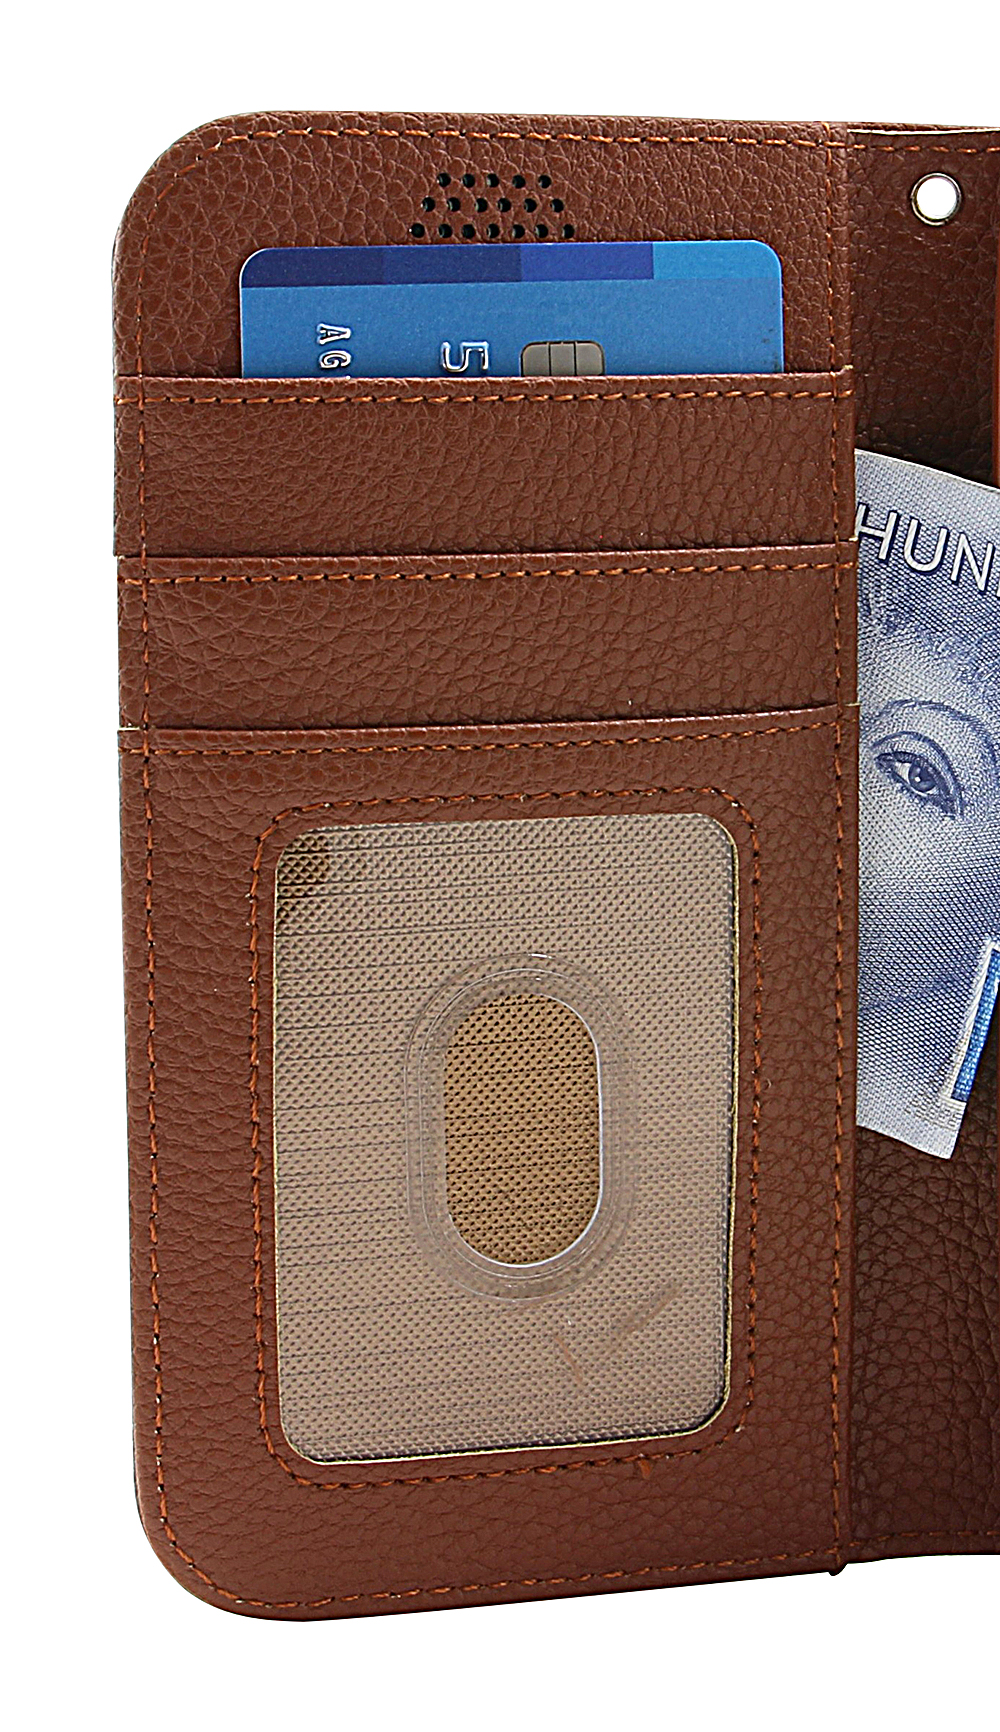 billigamobilskydd.seNew Standcase Wallet Nokia 6.2 / 7.2